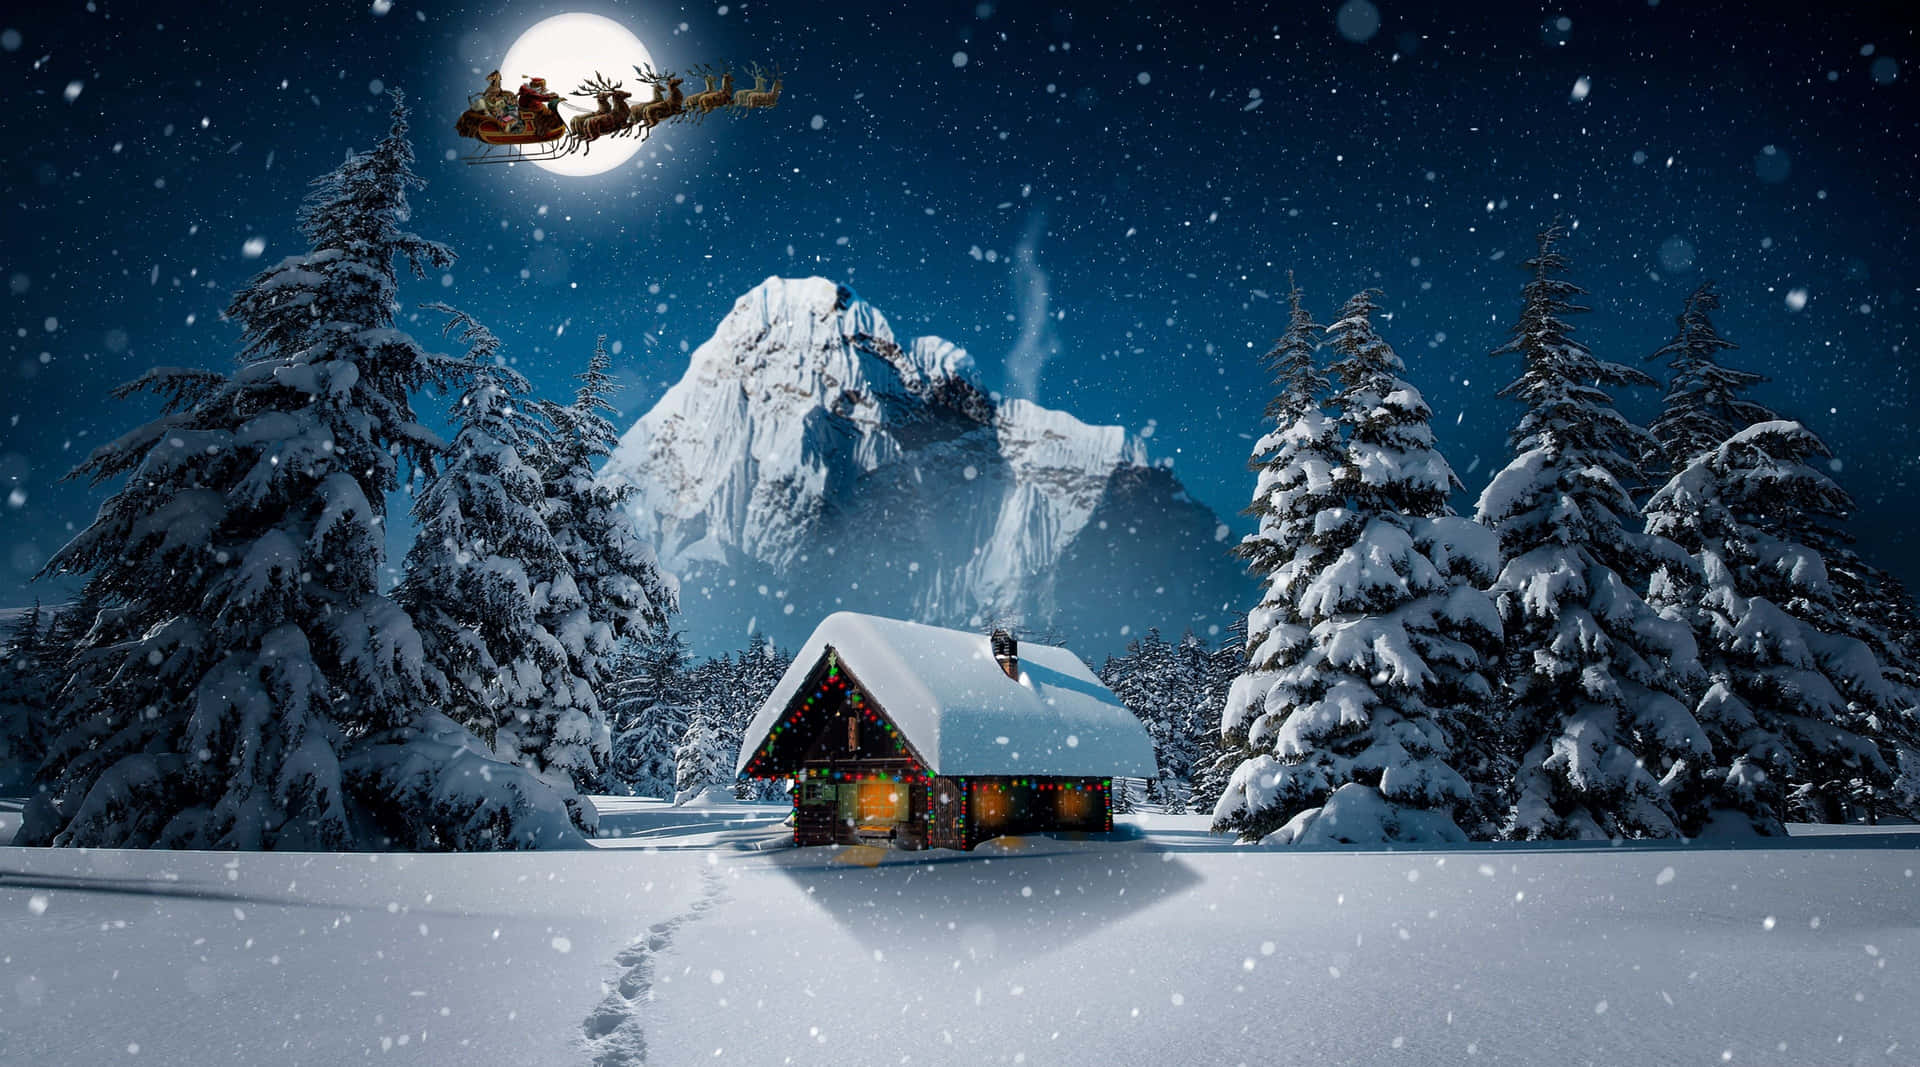 Fondode Pantalla De Noche Invernal Con Papá Noel Volando. Fondo de pantalla